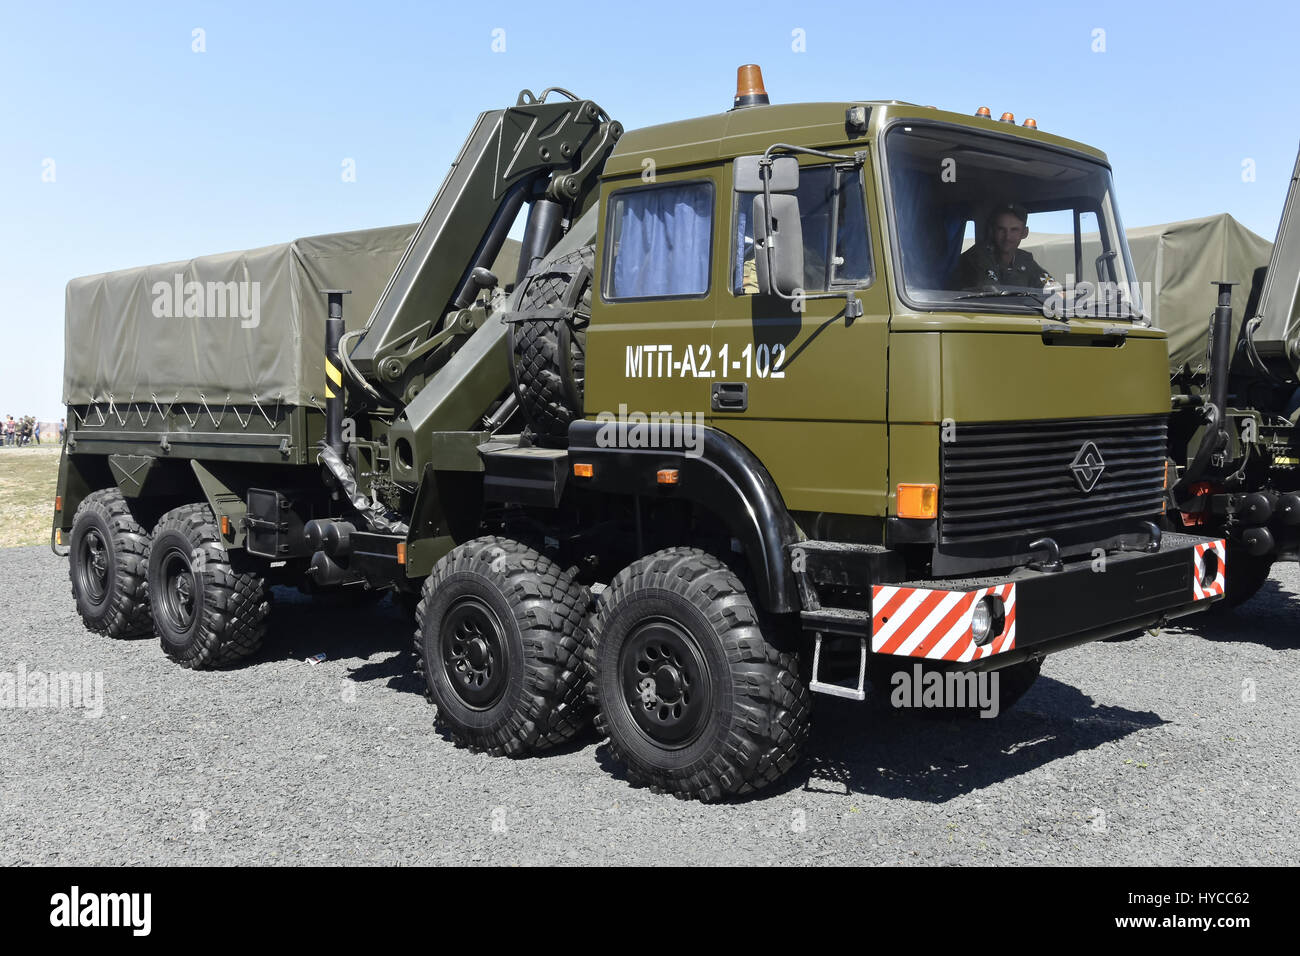 Technik Fahrzeug MTP-a2. 1-102, Kadamovskiy, Russland, 11. September 2016. Forum "Armee-2016". Eintrag und frei zu schießen. Stockfoto